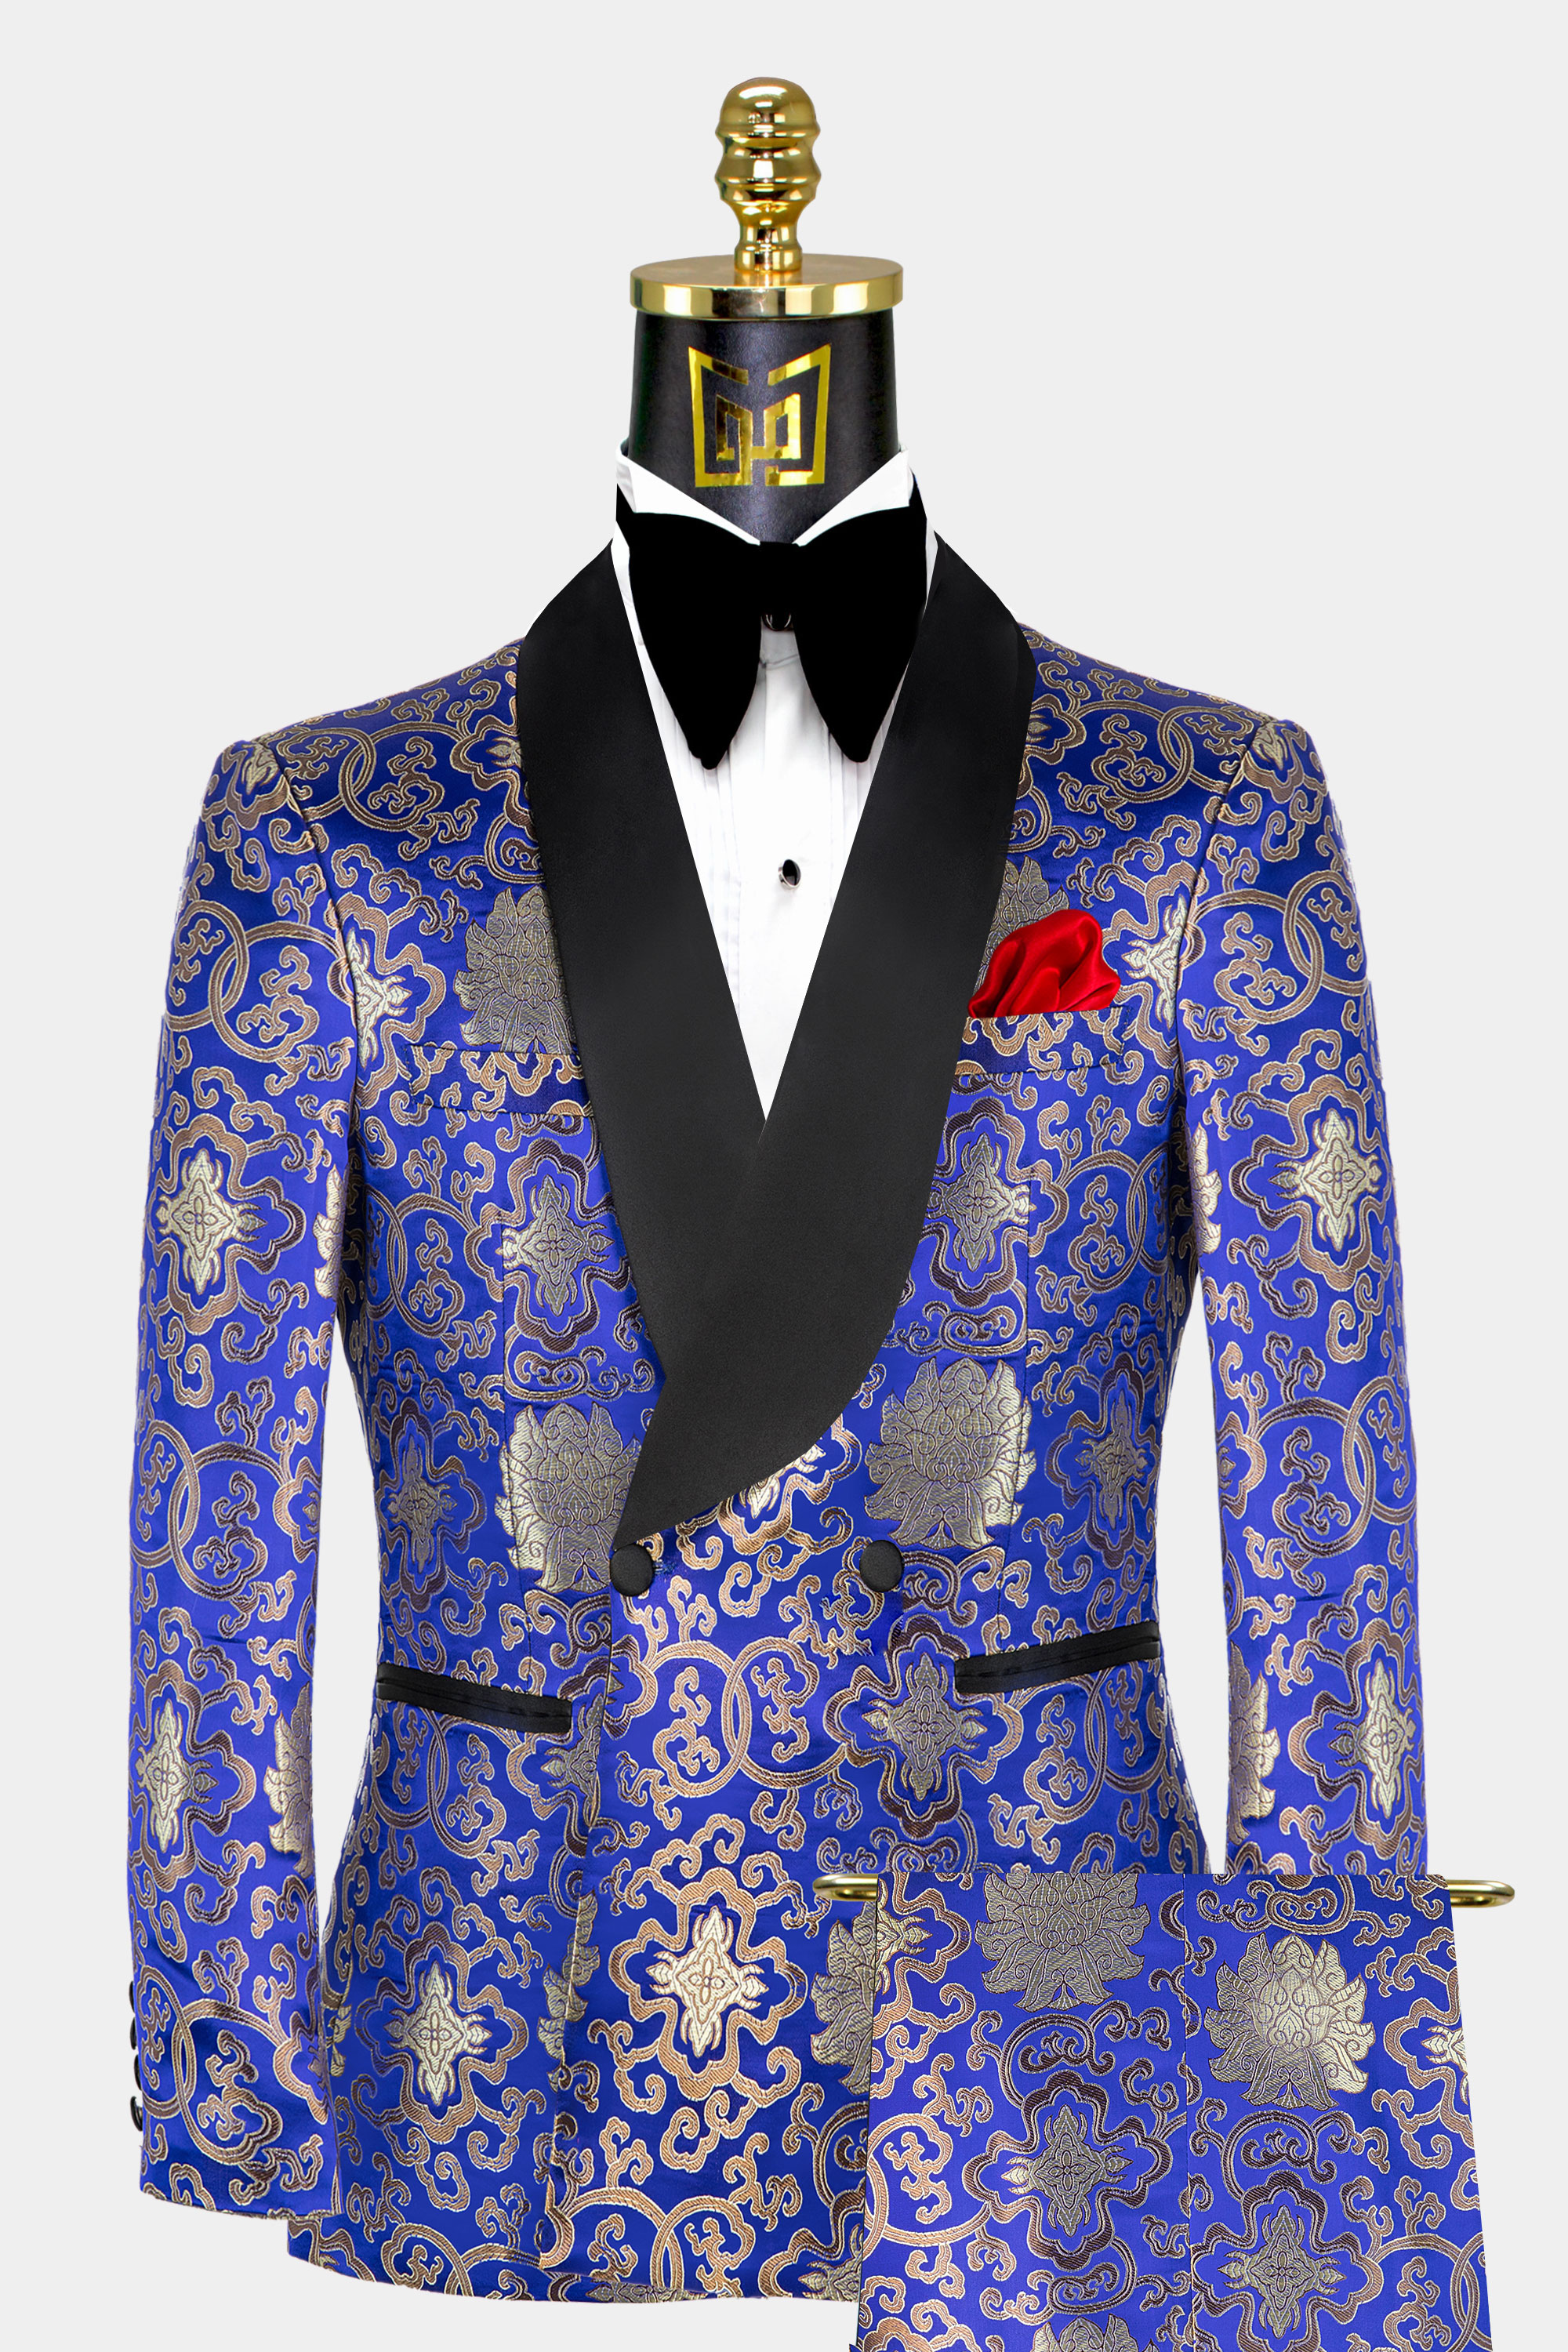 Gold-and-Blue-Tuxedo-Weddin-Groom-Prom-Suit-For-Men-from-Gentlemansguru.com